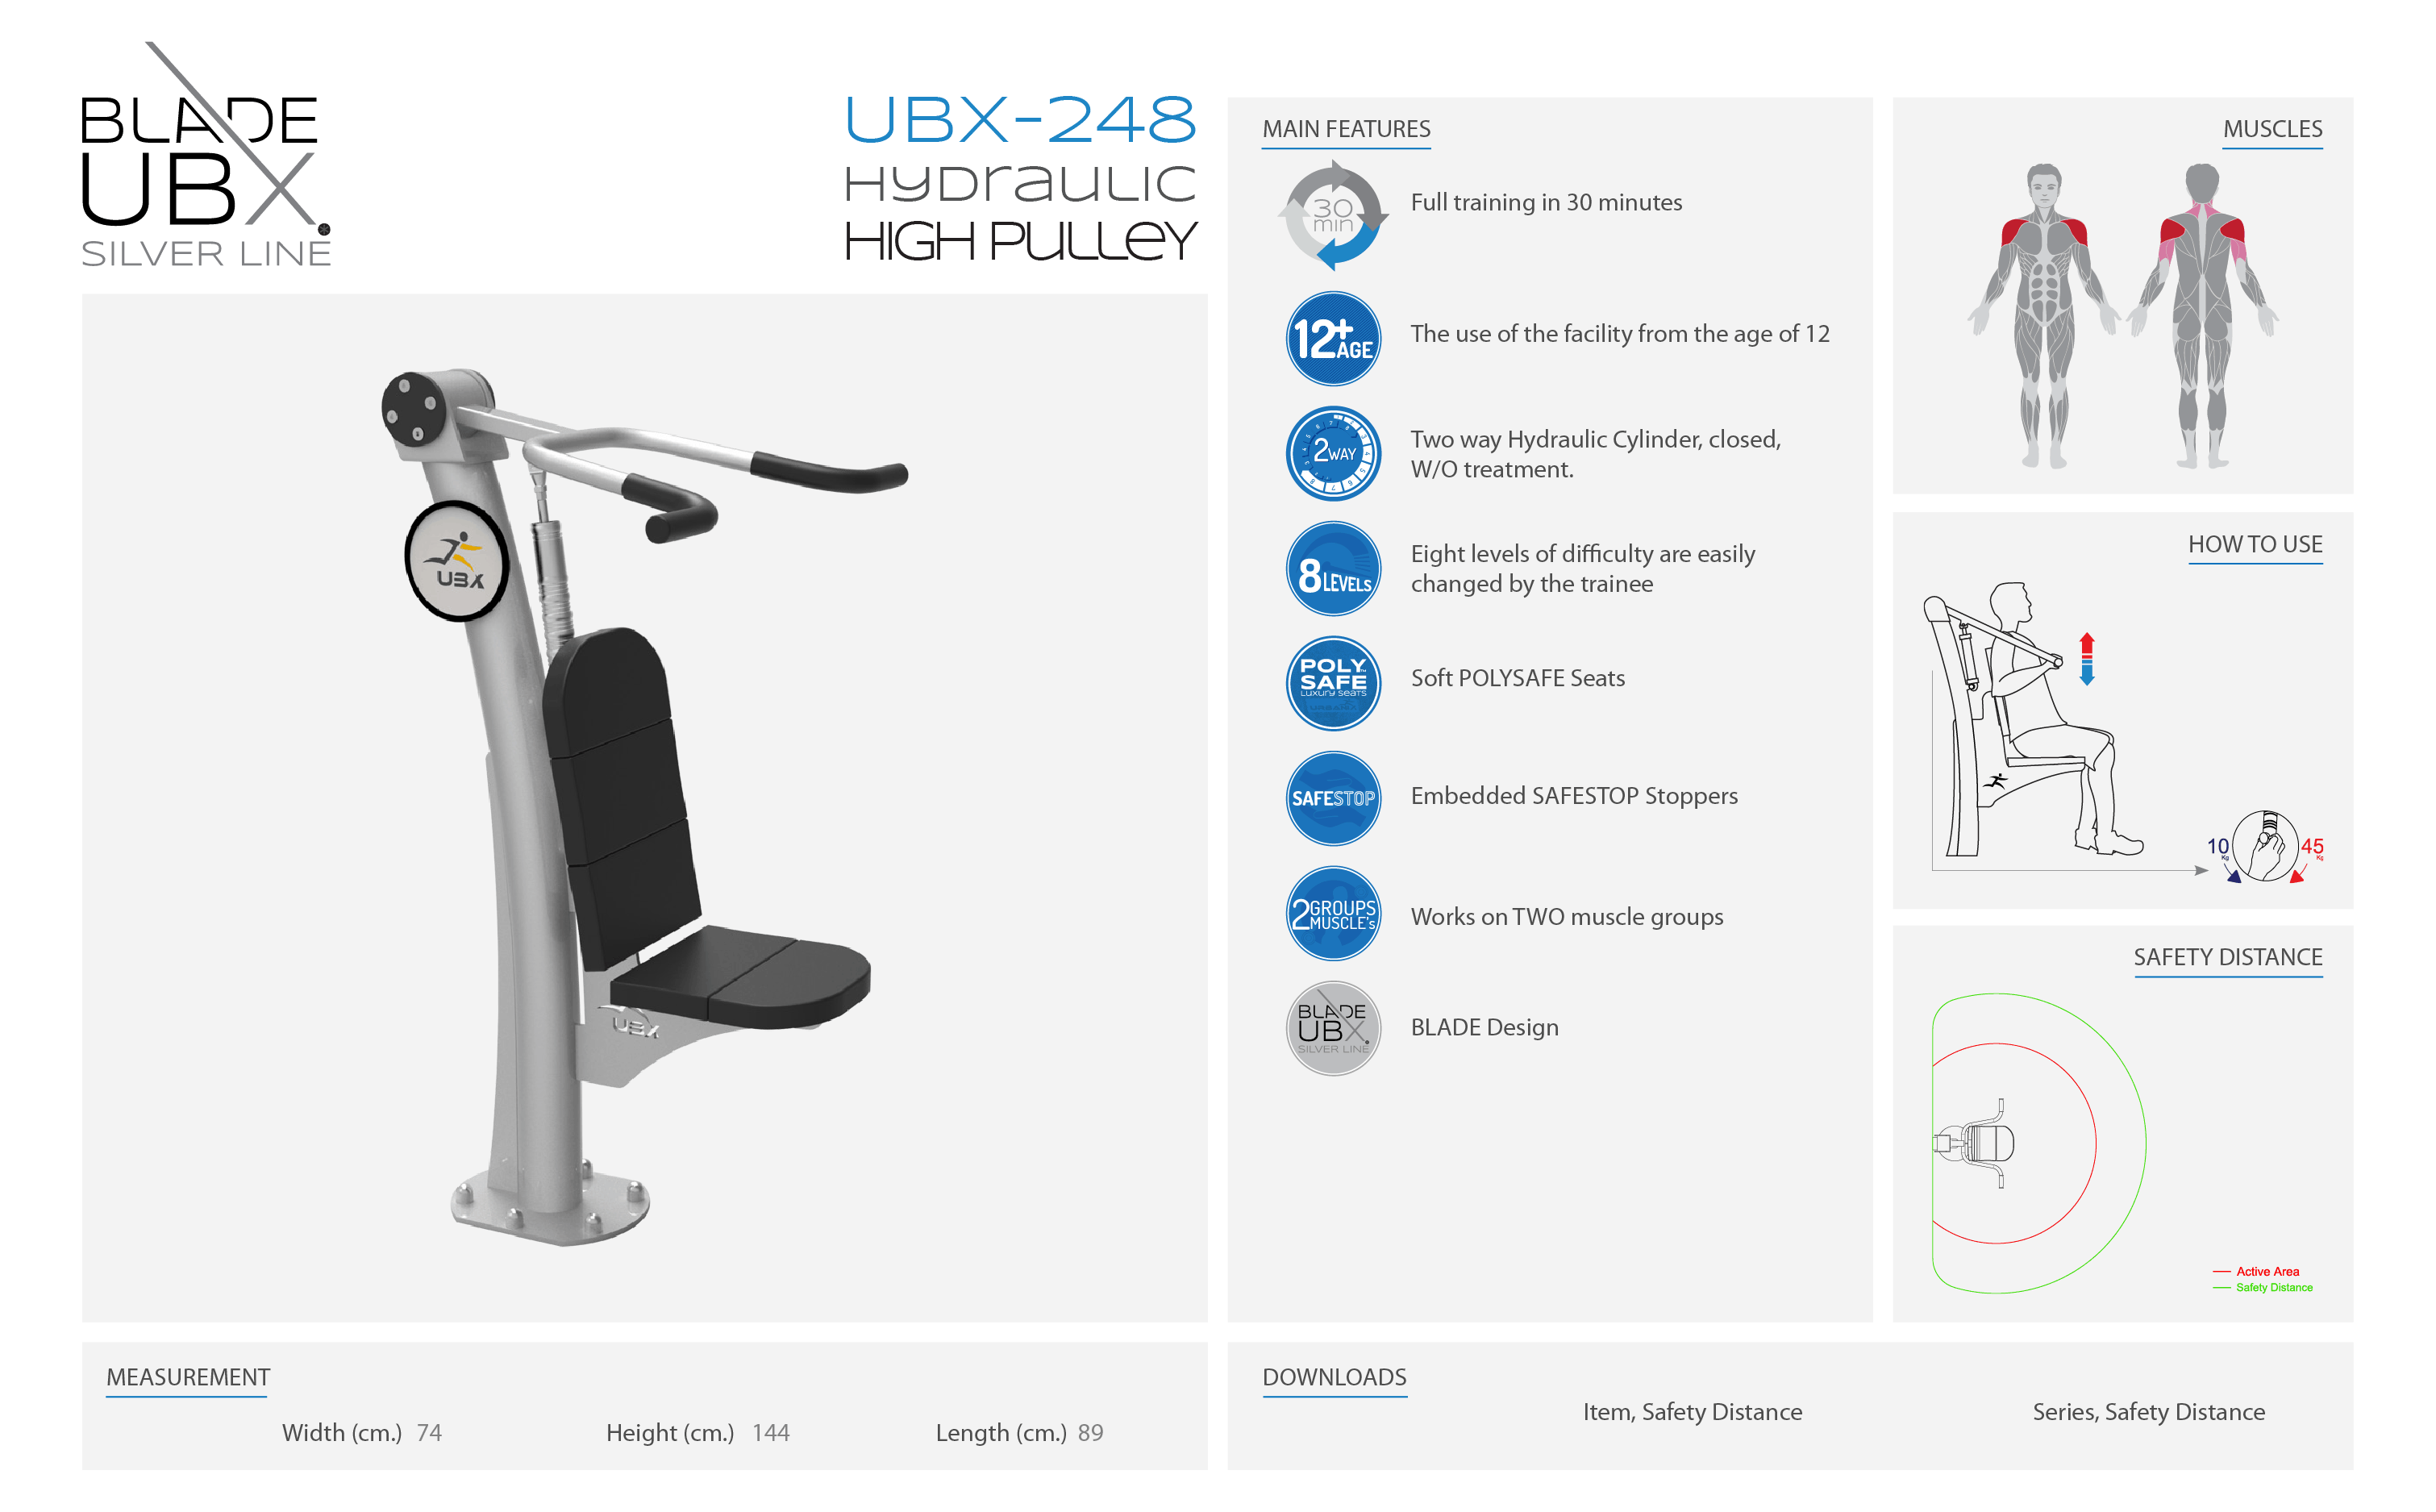 ubx-248 hydraulic high pulley - אורבניקס - מתקן כושר -  הרקולס משיכה פולי עליון הידראולי